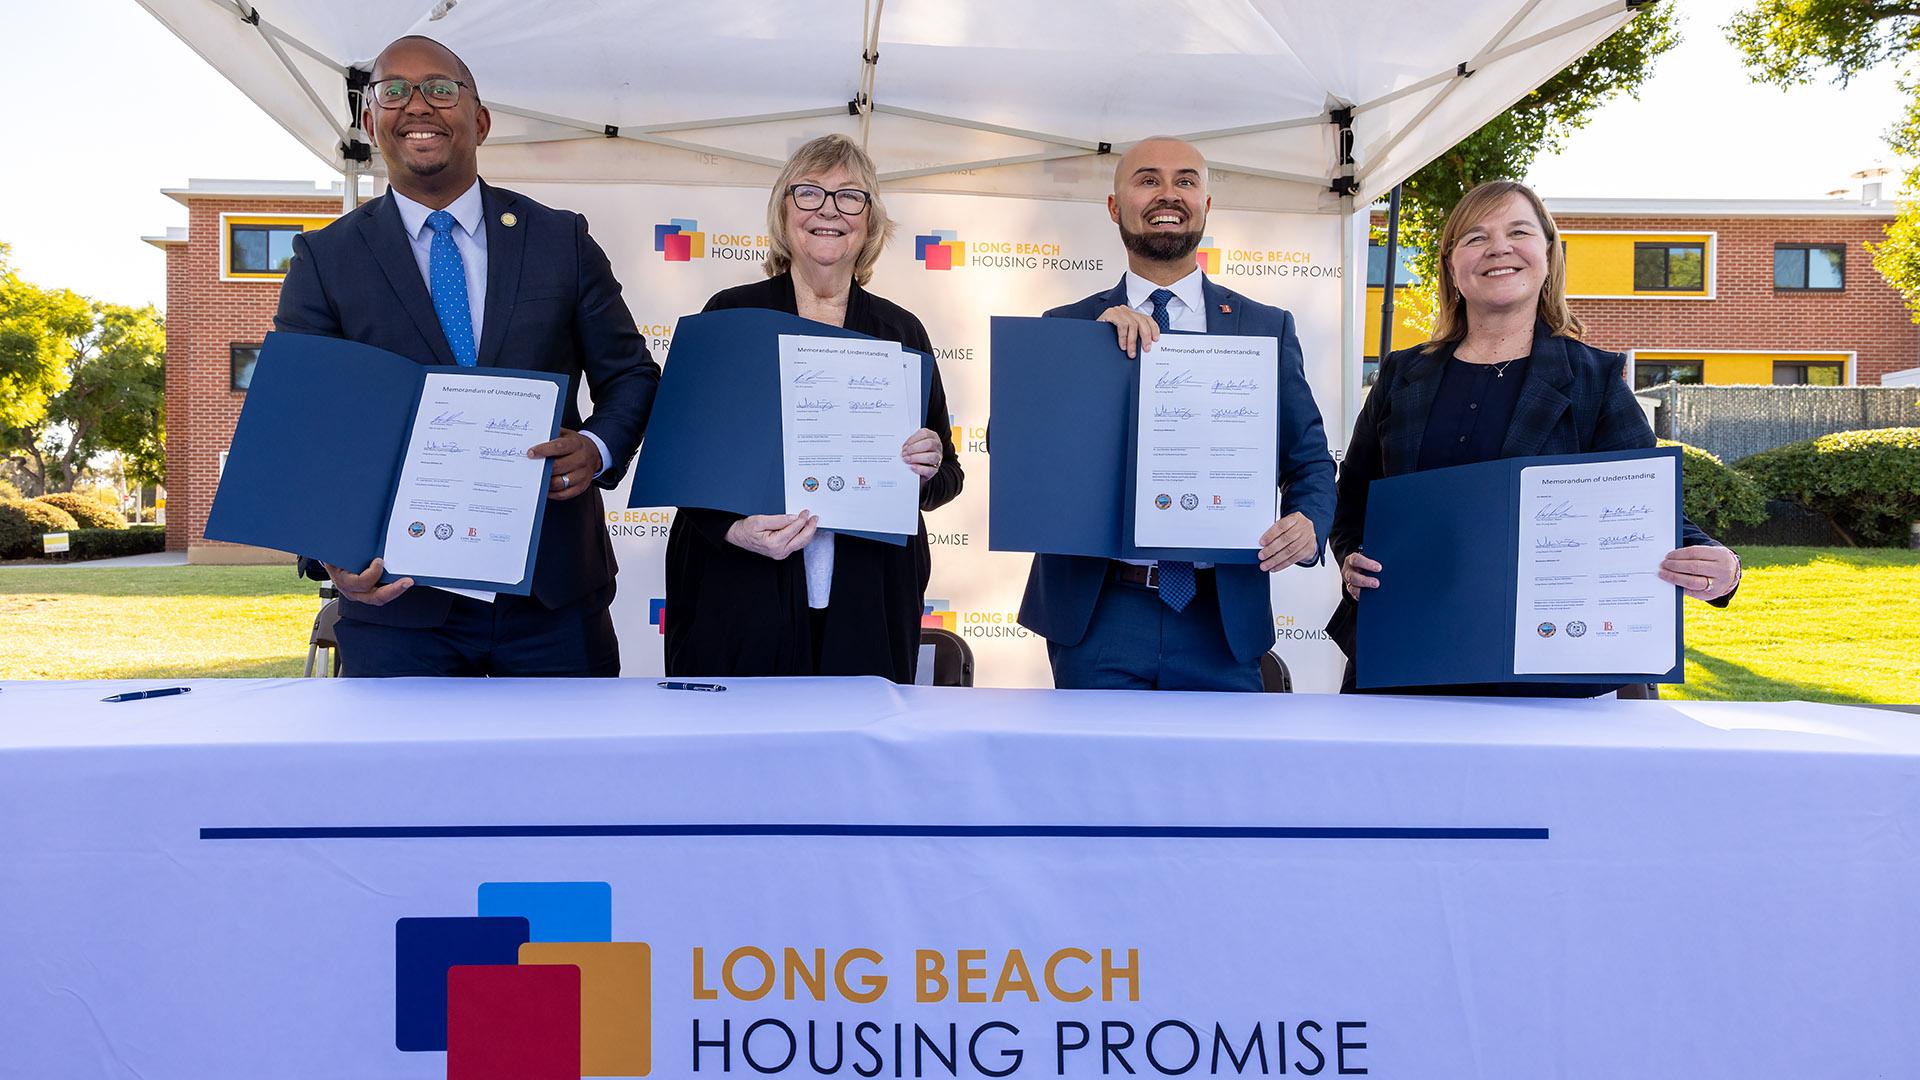 Officials hold signed memorandum for Long Beach Housing Promise